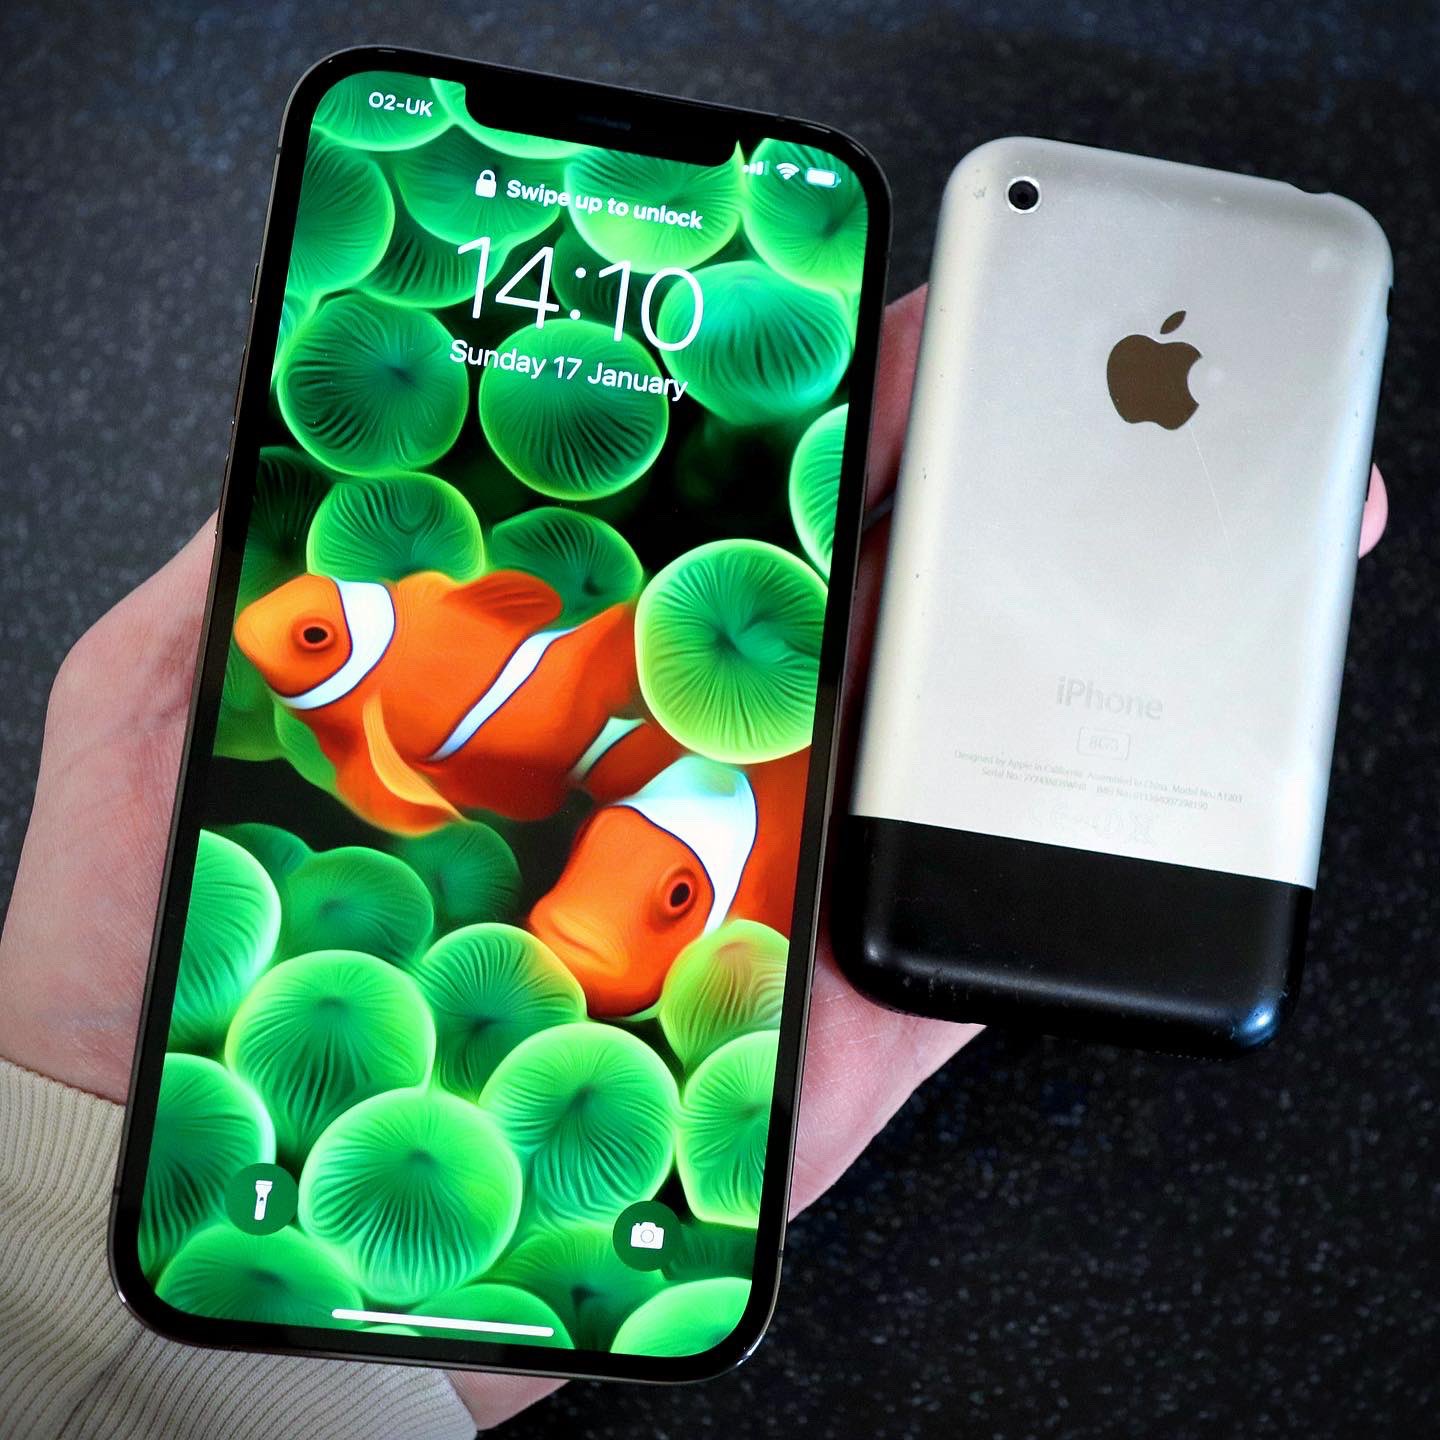 Hình nền iPhone là một trong những điểm nhấn quan trọng khiến iPhone của bạn trở nên độc đáo và thú vị hơn bao giờ hết. Khám phá ngay bộ sưu tập hình nền iPhone đầy màu sắc và đẹp mắt, tạo nét riêng cho chiếc điện thoại của bạn.